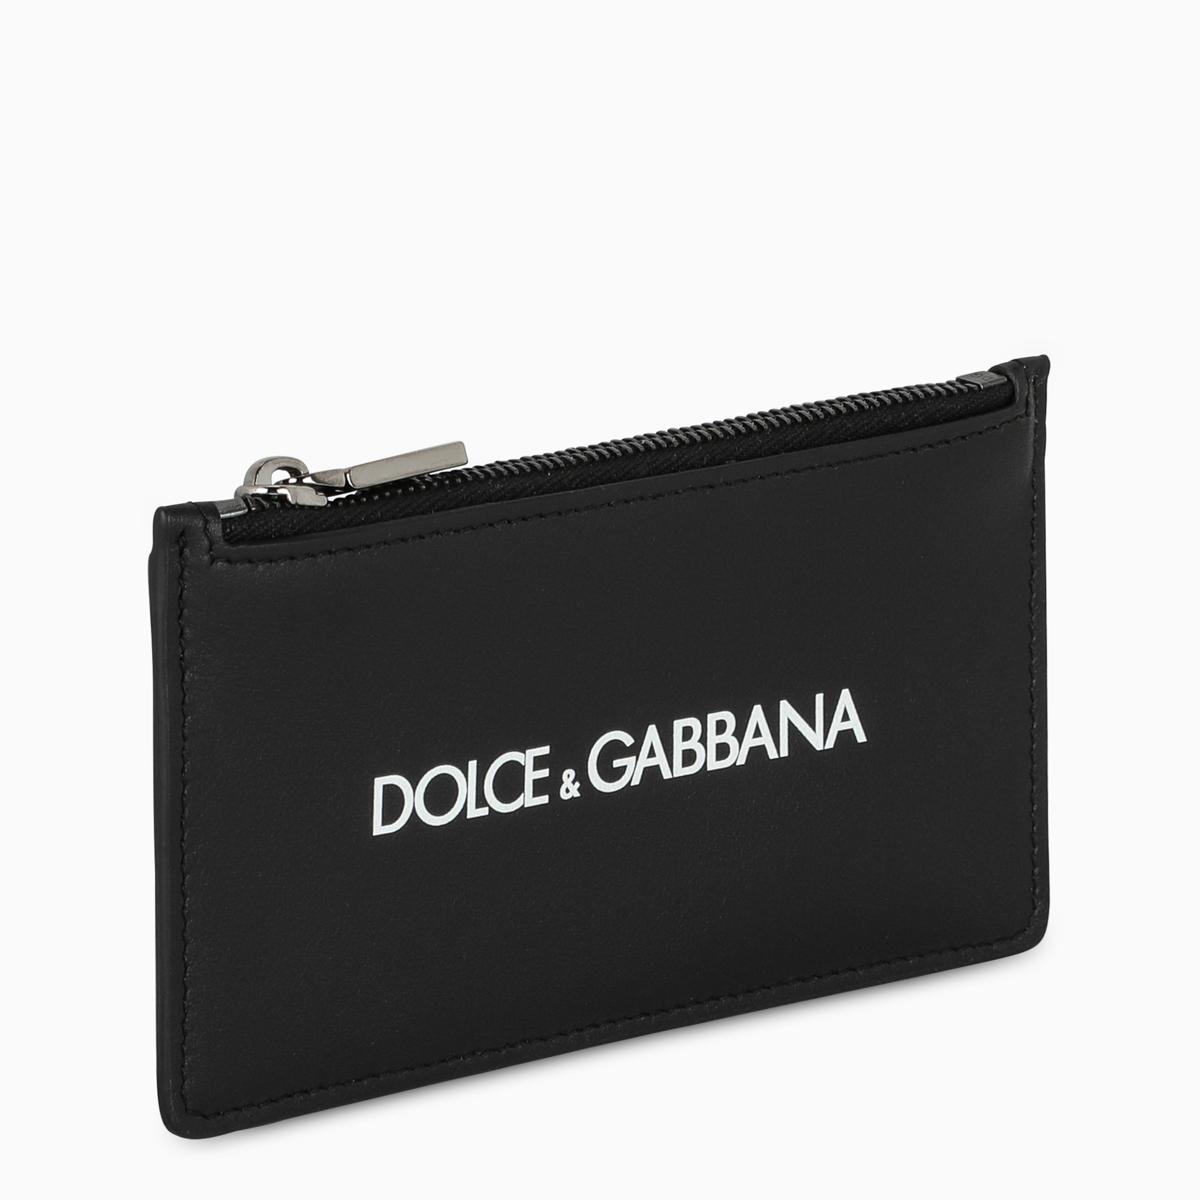 Dolce & Gabbana Leather Black Credit Card Holder for Men - Lyst